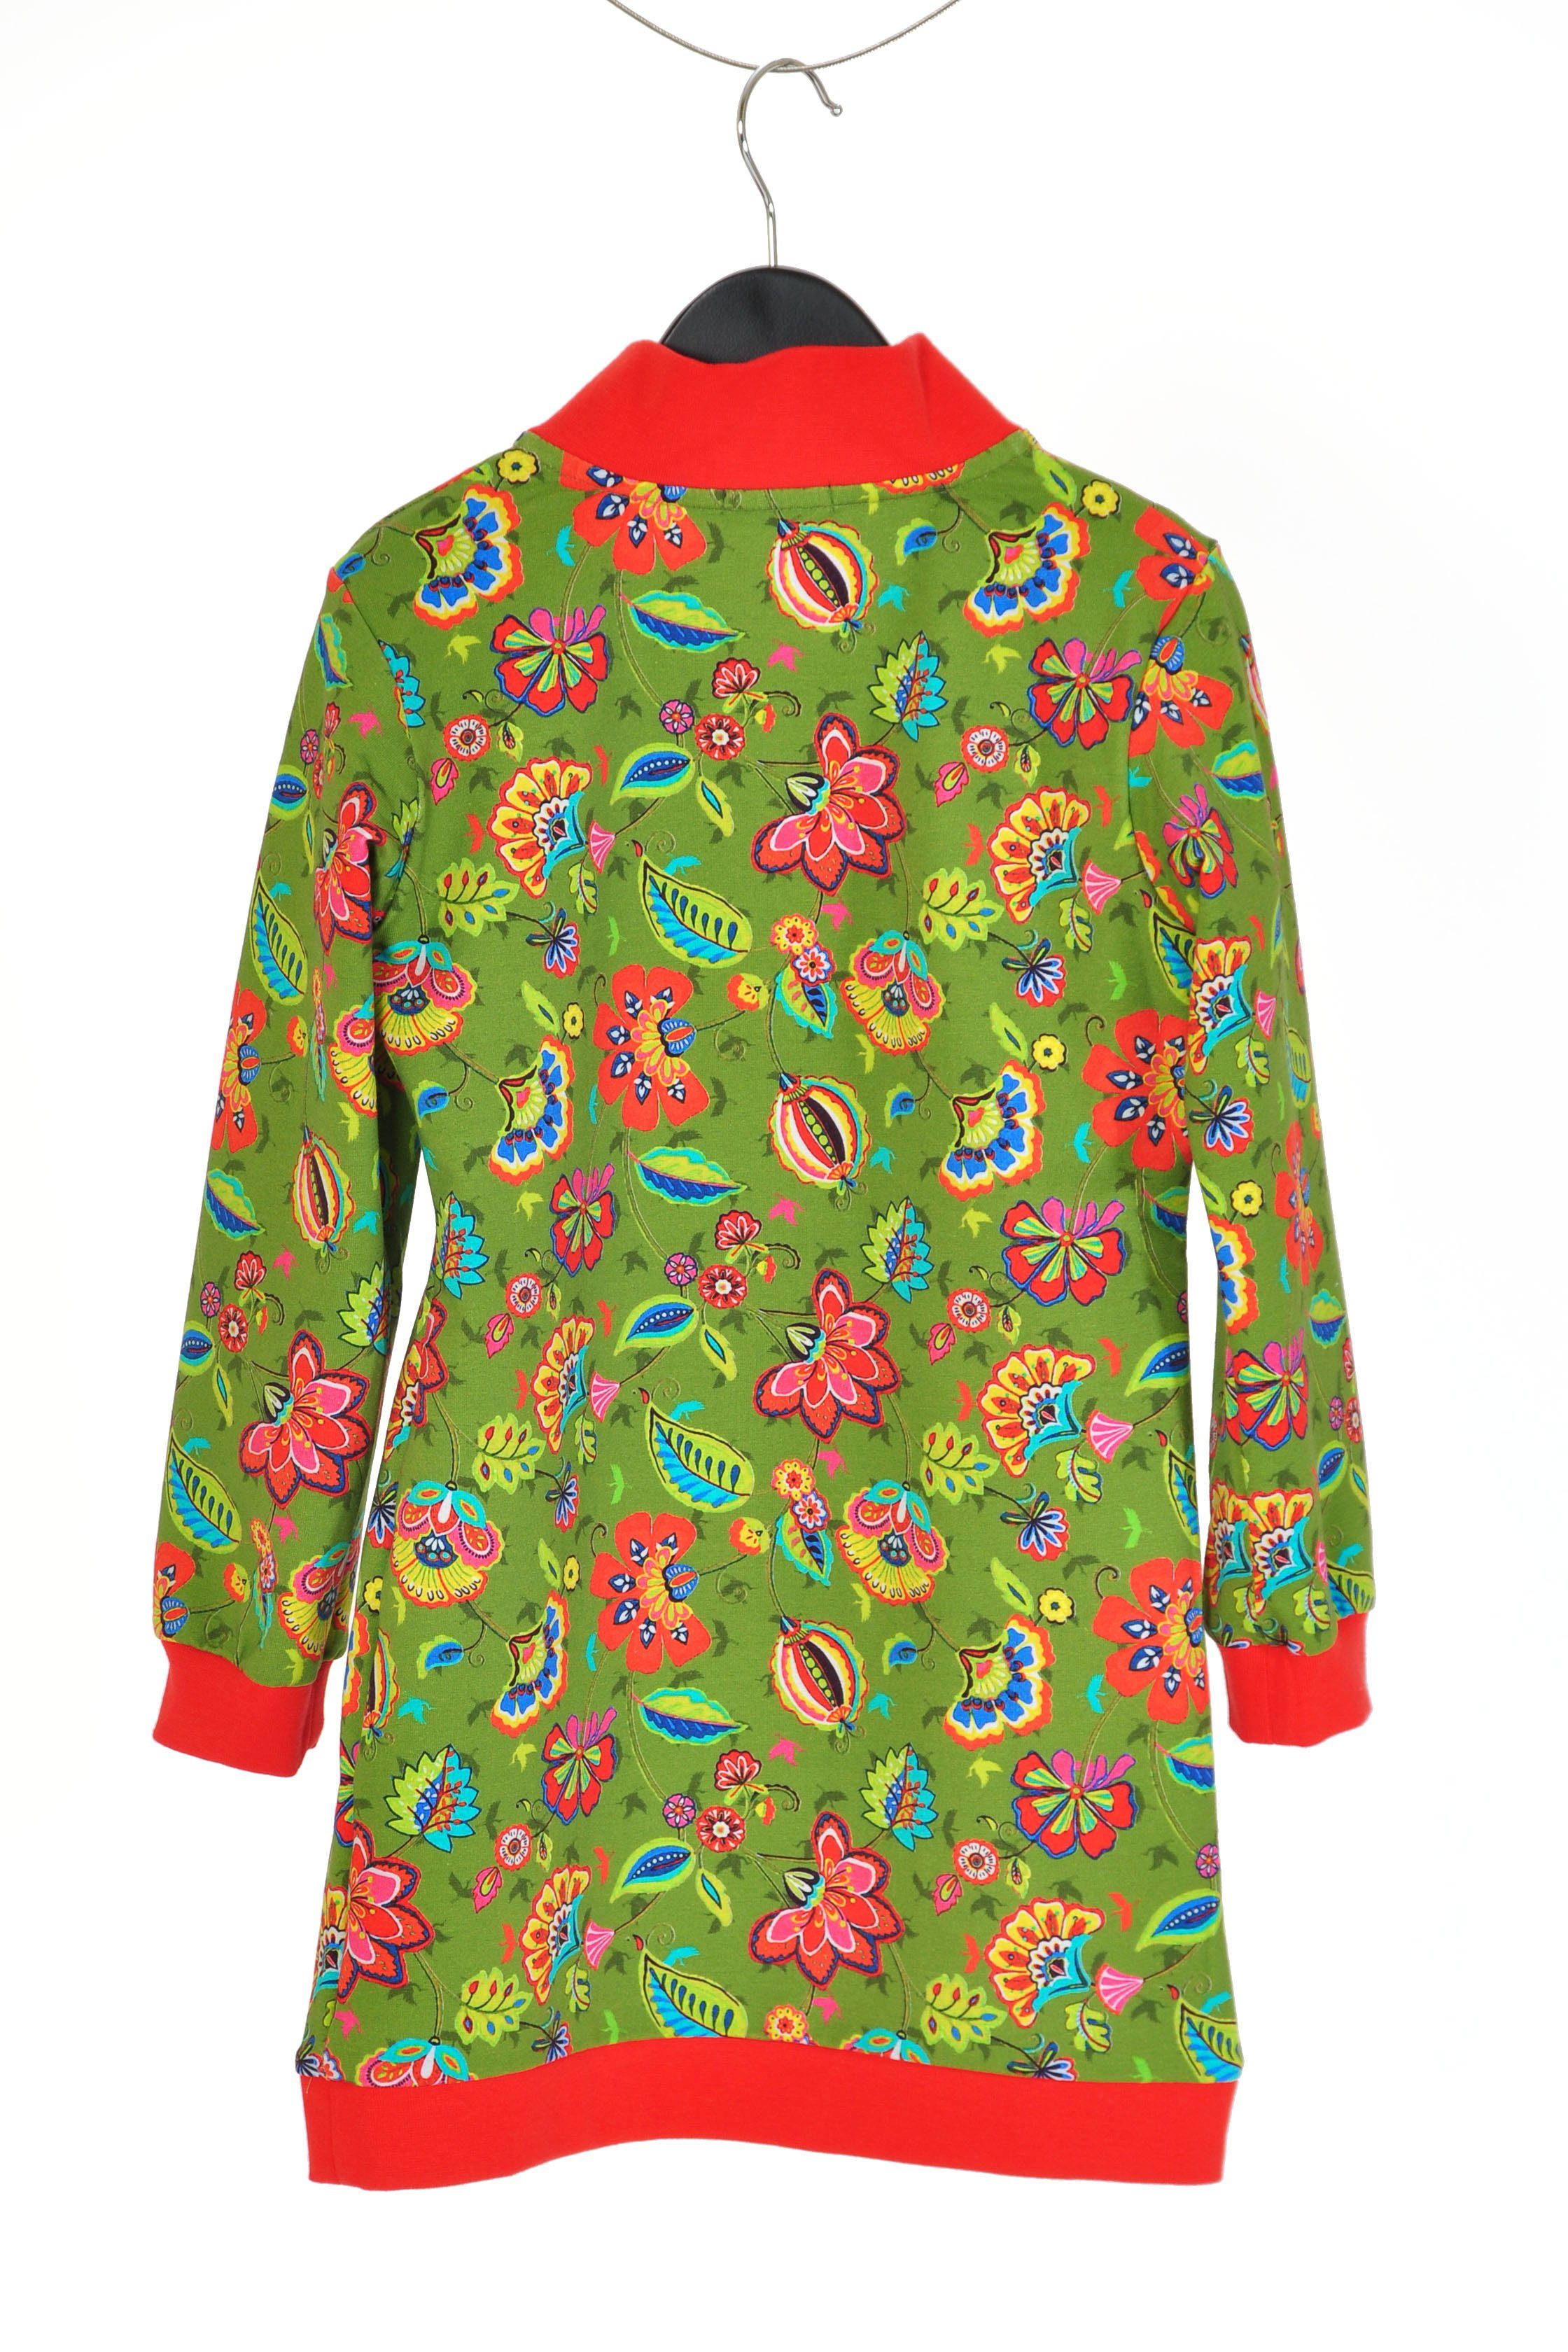 coolismo Sweatkleid Sweatshirt Kleid für Produktion europäische oliv coole Motivdruck Blumen mit Mädchen